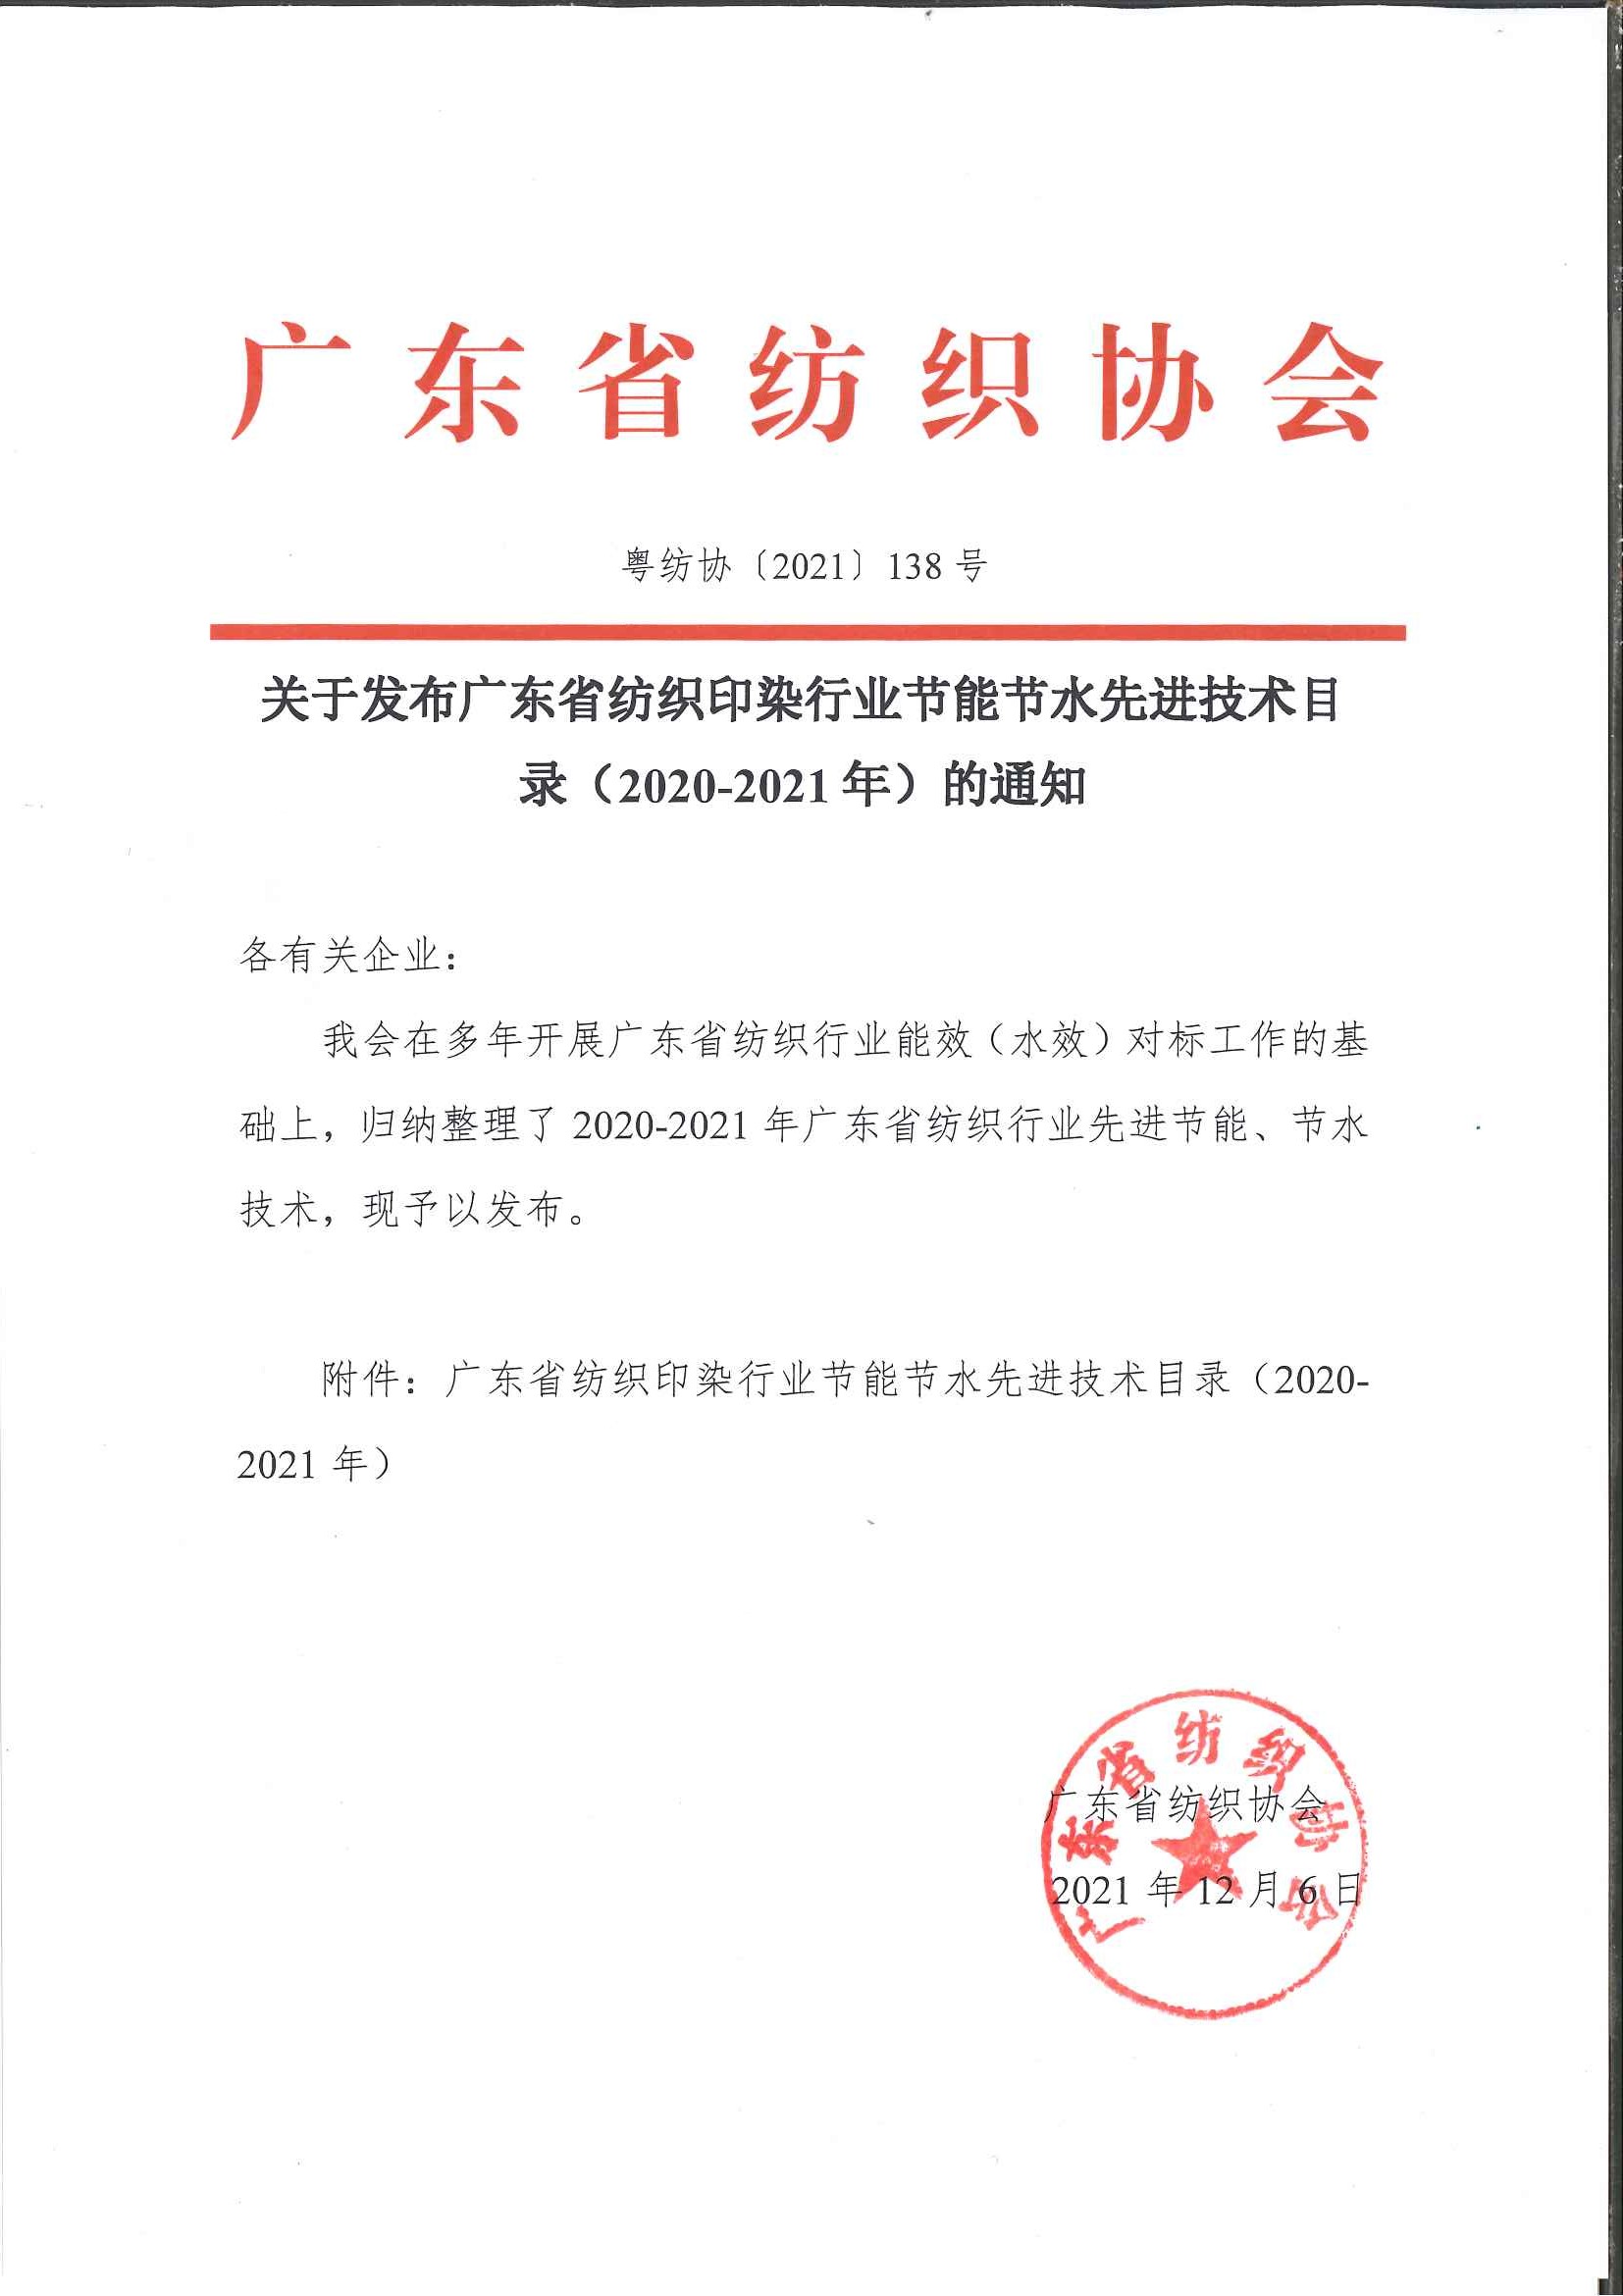 10、关于发布广东省纺织印染行业节能节水先进技术目录（2020-2021年）的通知_页面_1.jpg